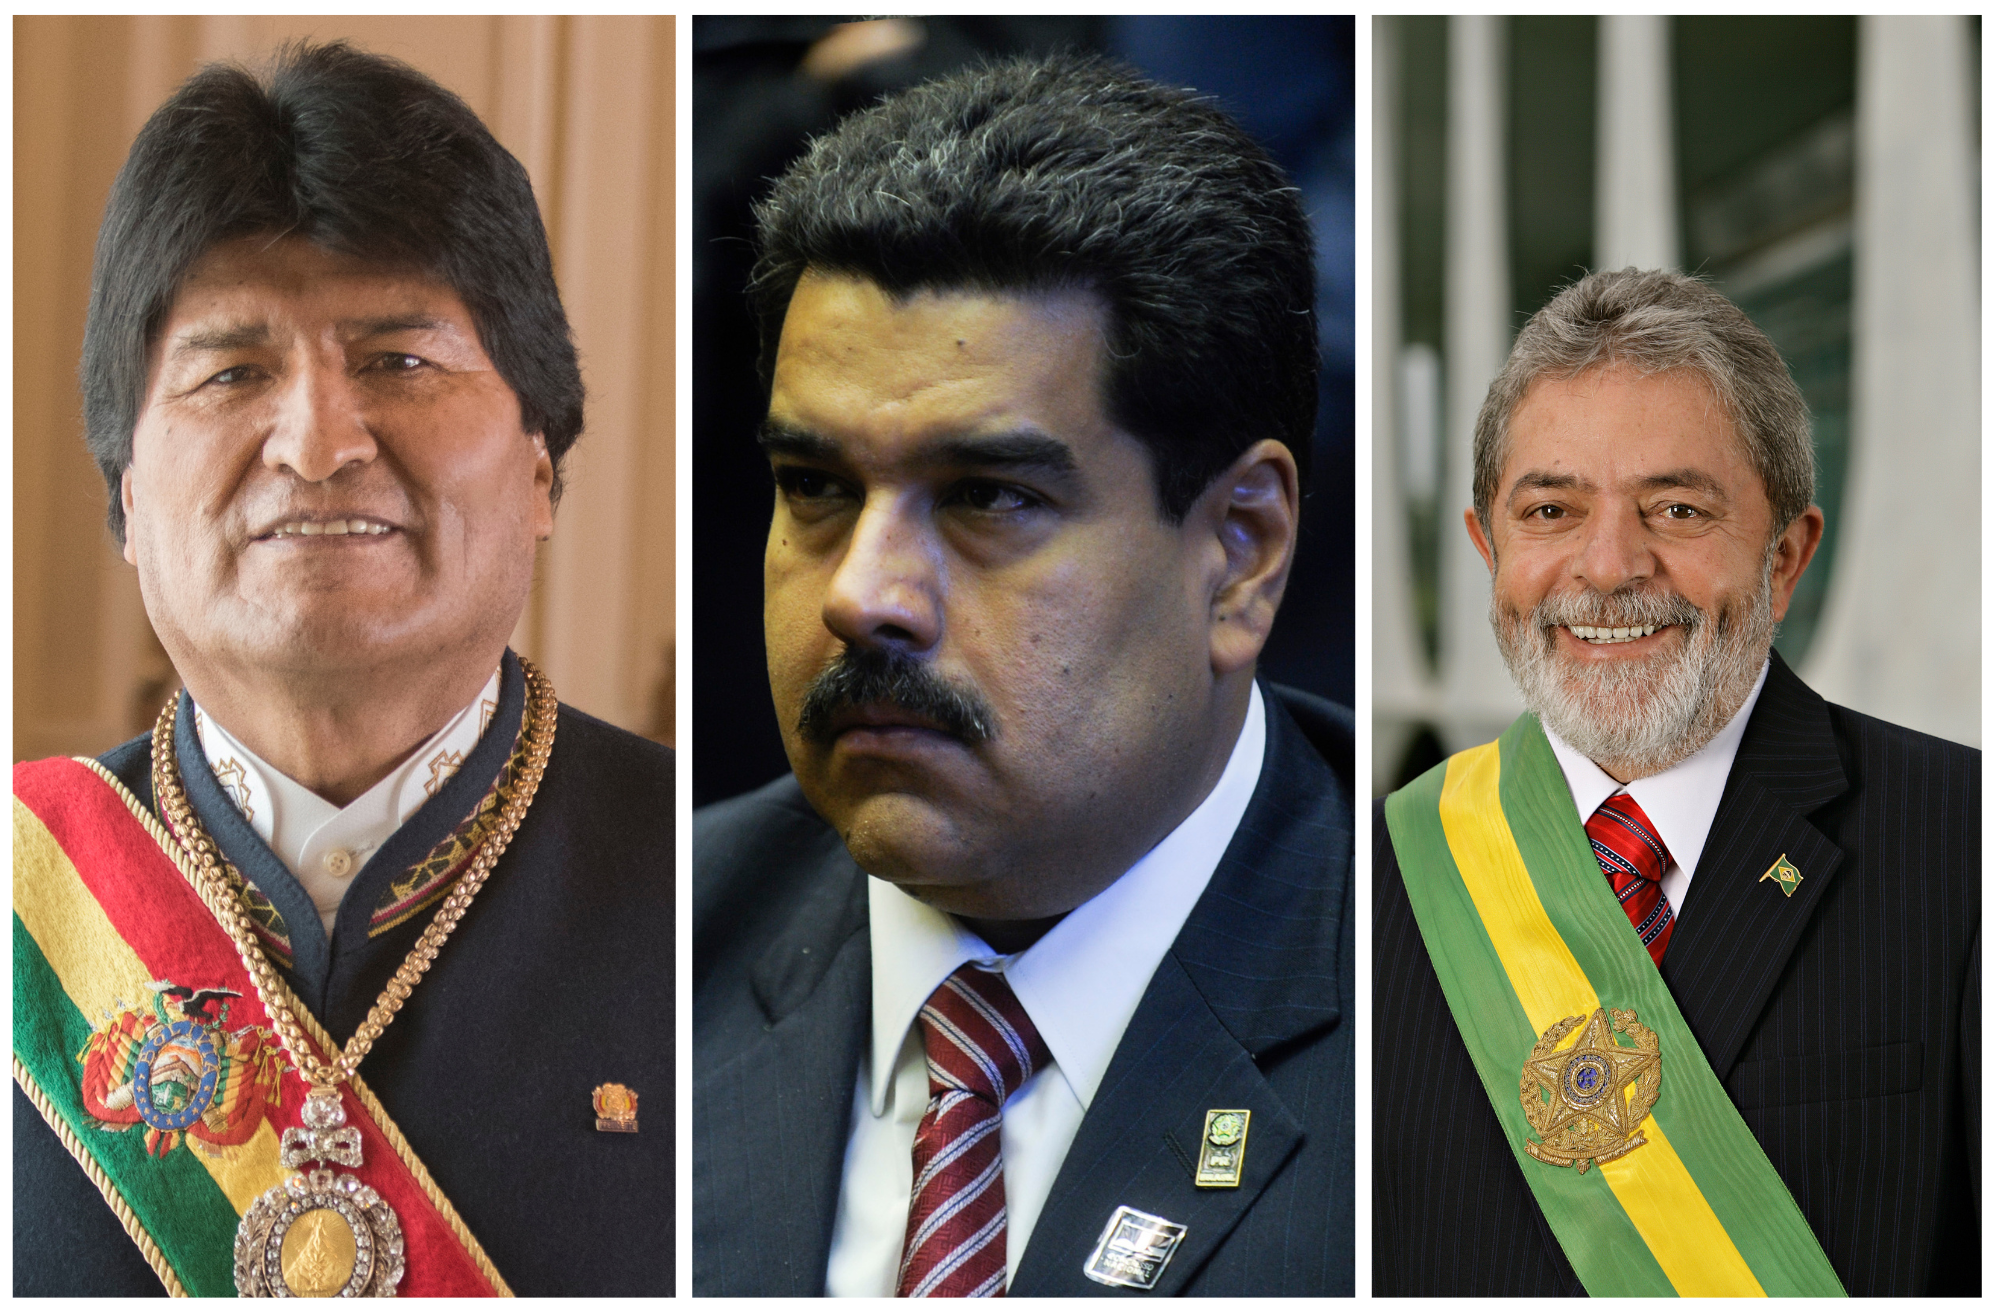 Evo Morales, 65th President of Bolivia & Nicolás Maduro, President of Venezuela & Luiz Inácio Lula da Silva, President of Brazil